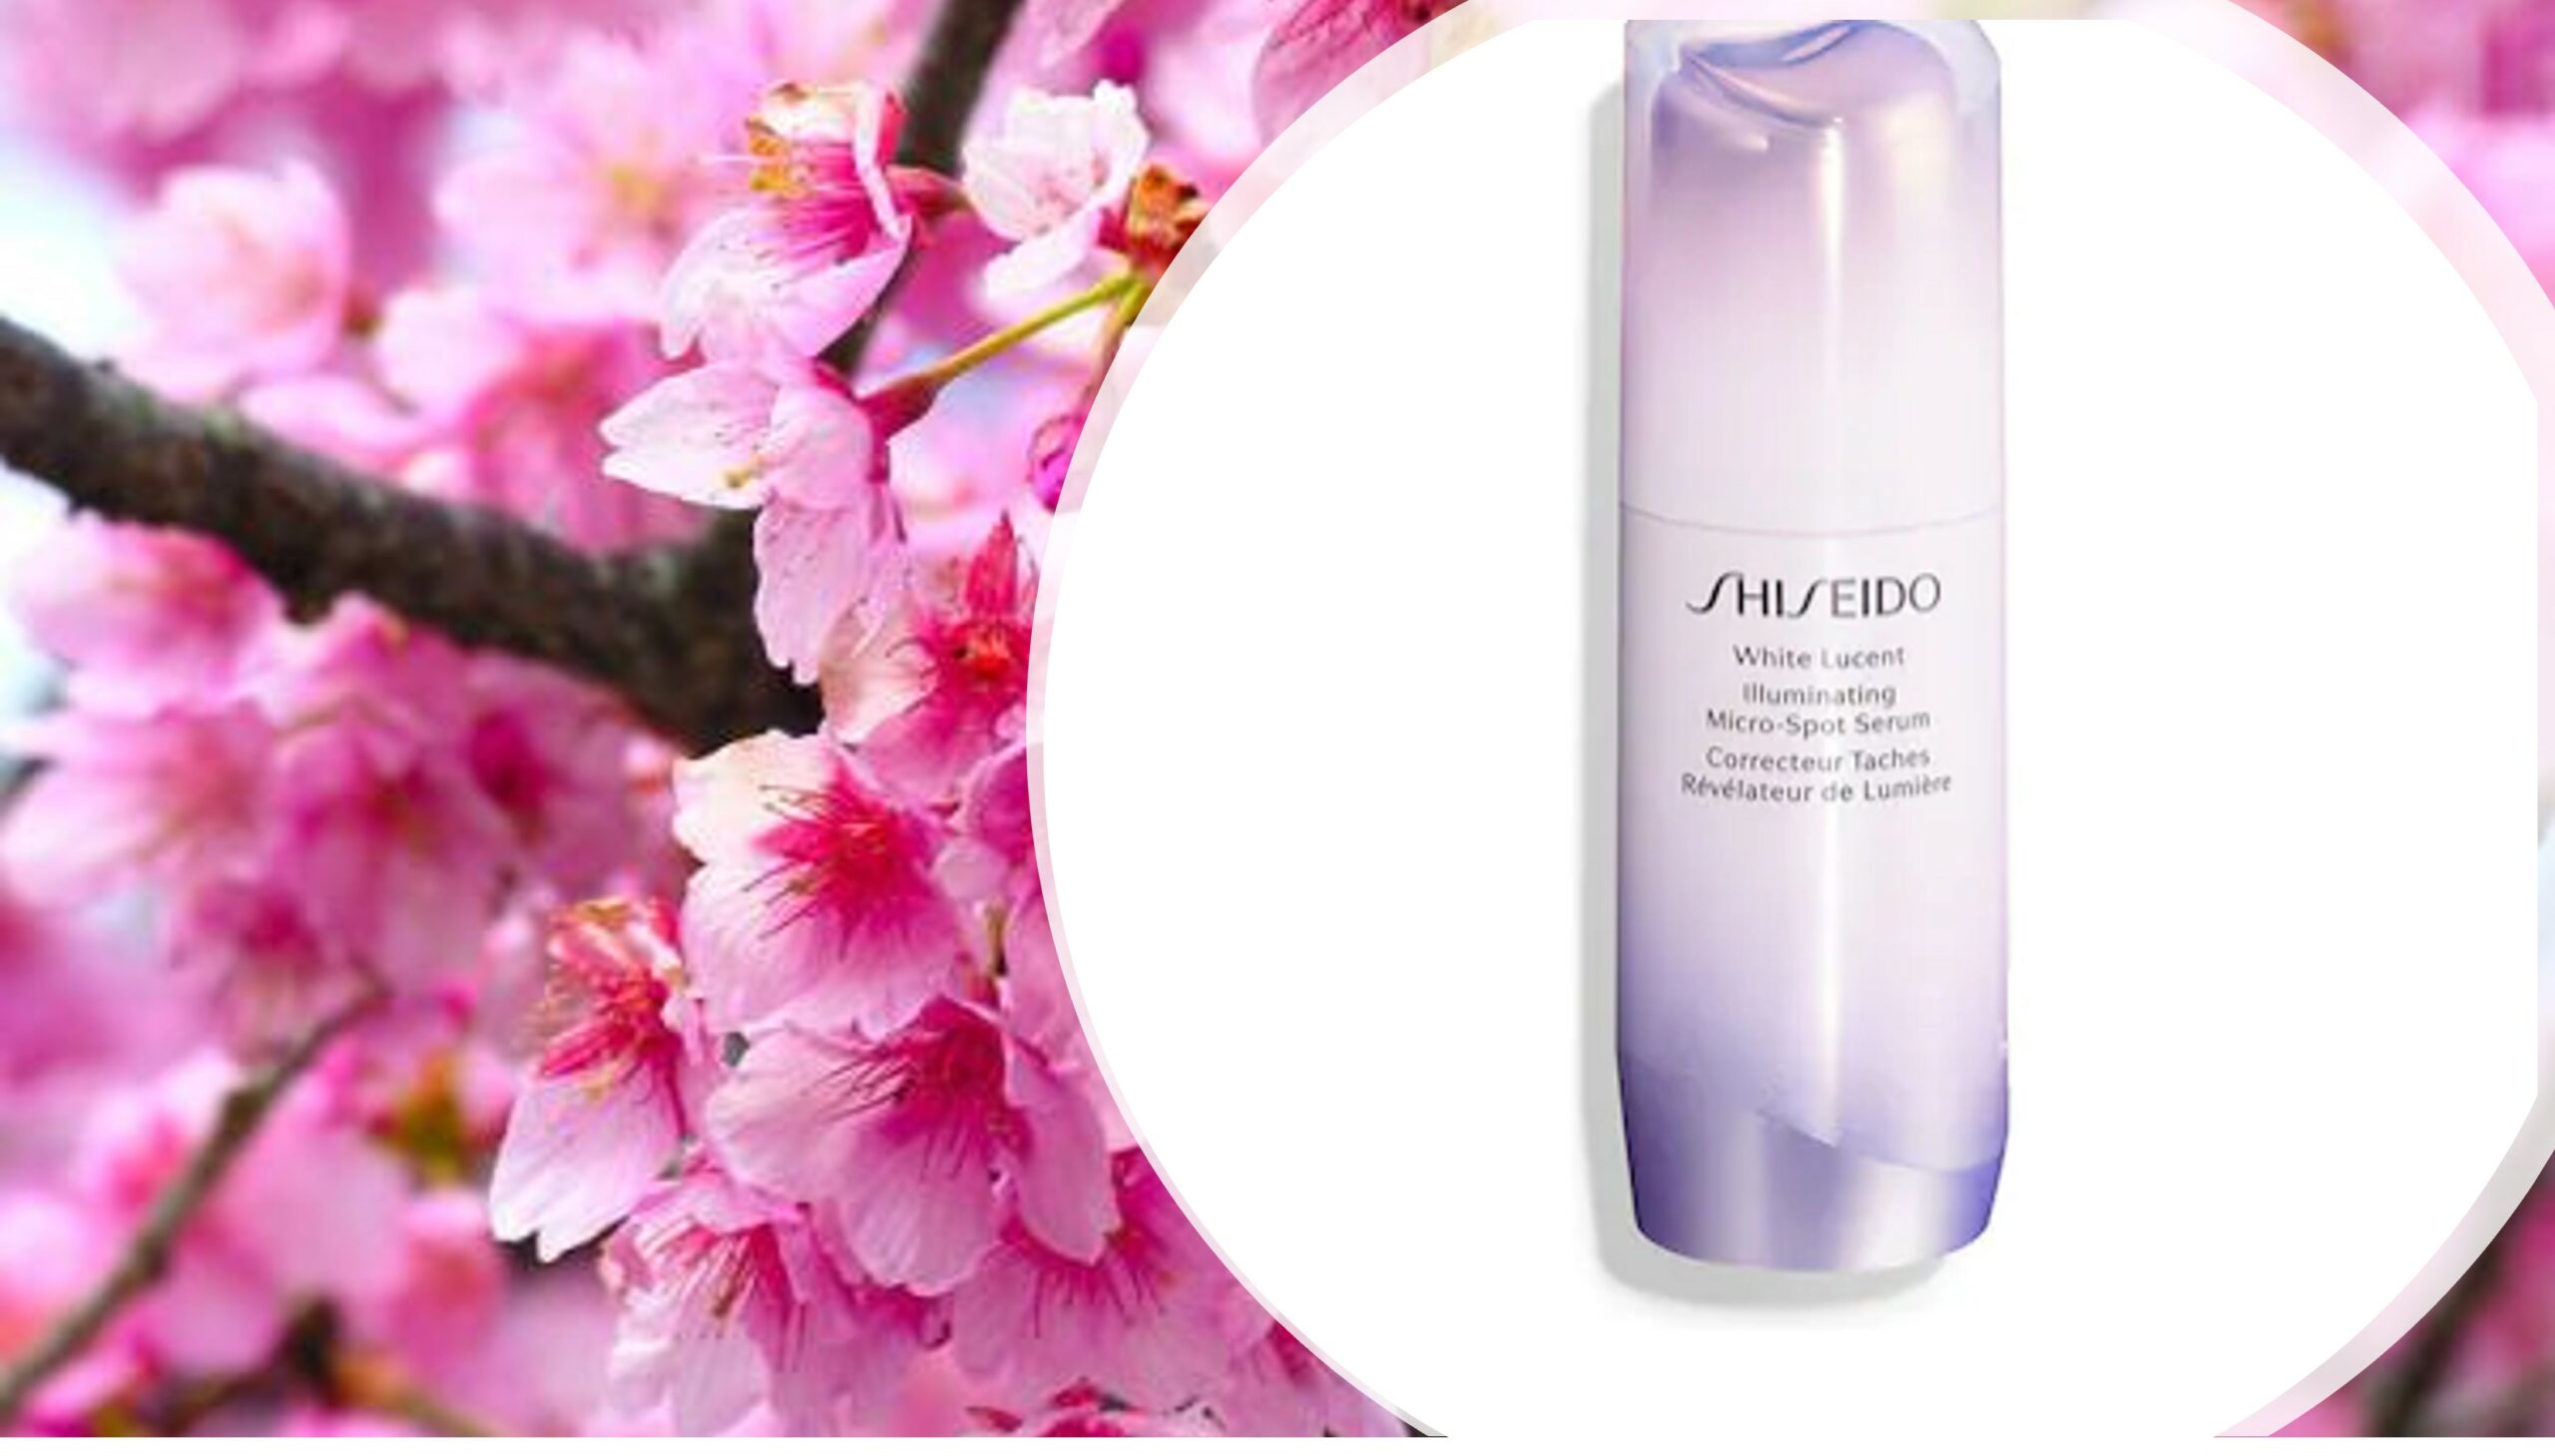 Sakura + Shiseido